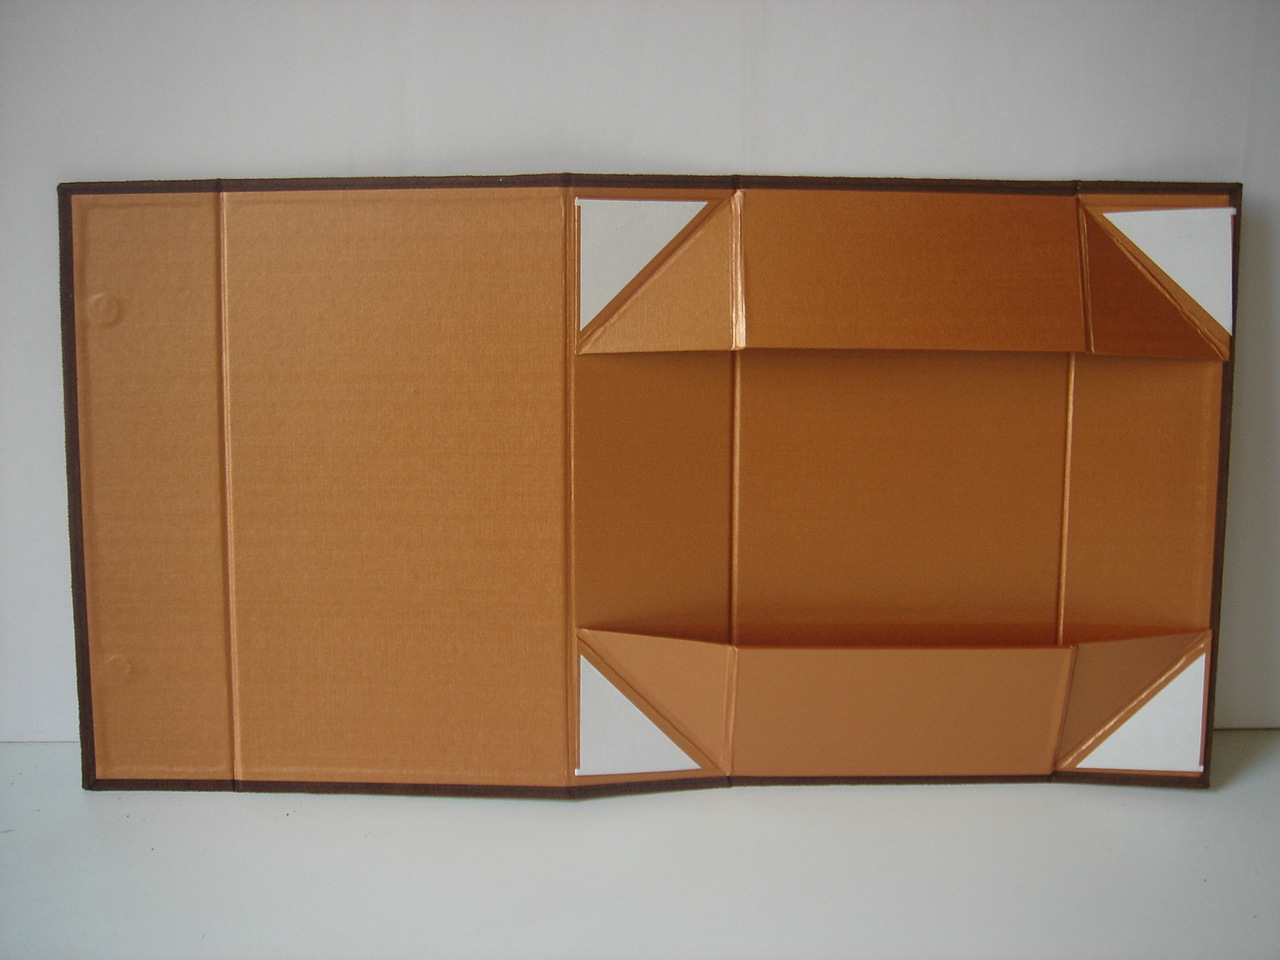 盘式折叠纸盒图片